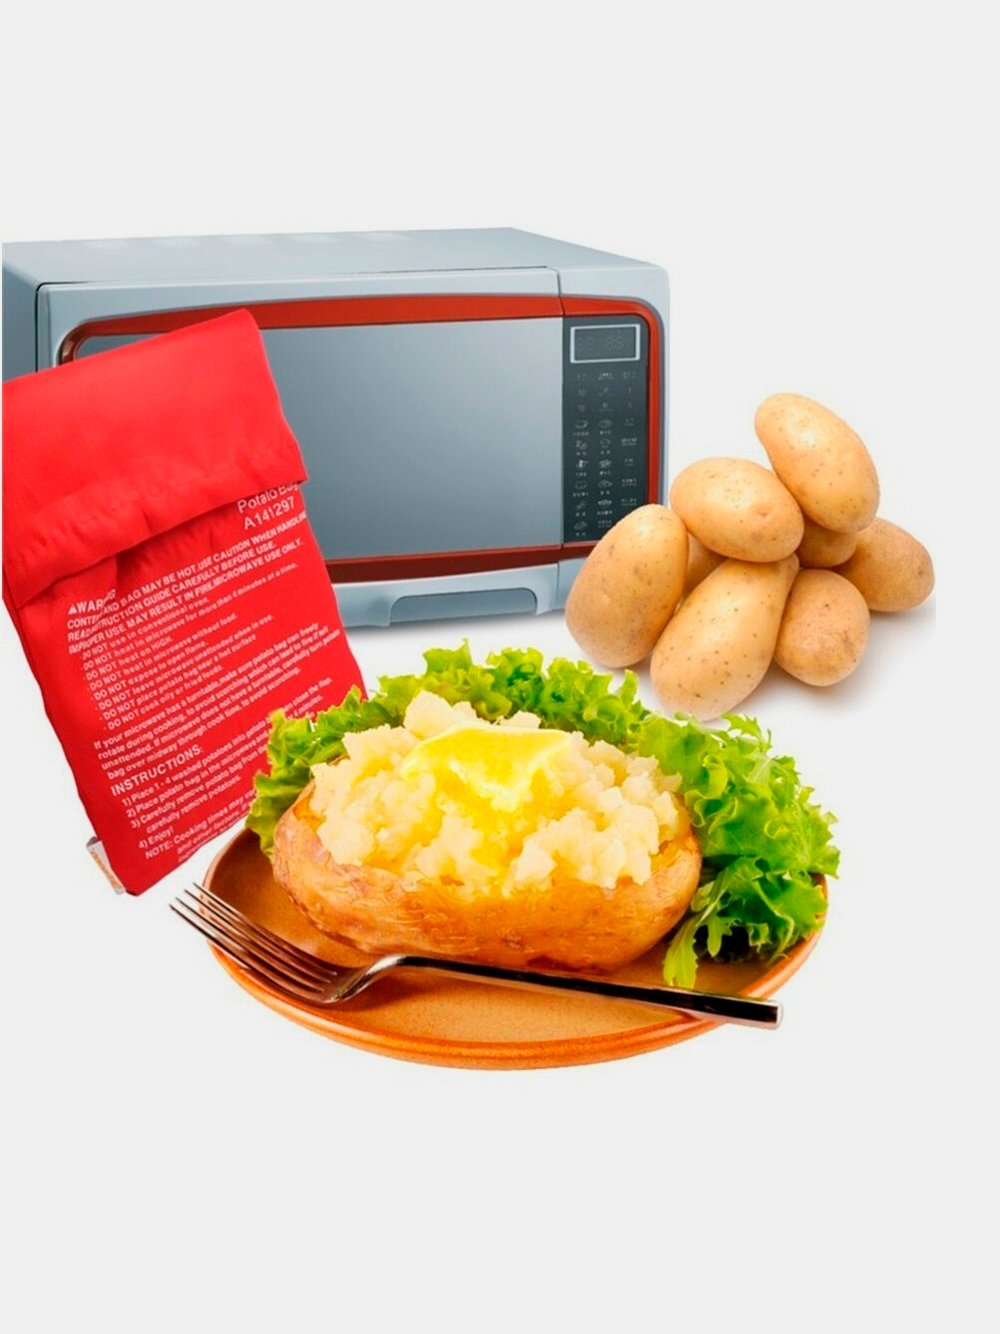 Картошка в свч. Пакет для микроволновки для картошки. Мешок для запекания картофеля. Мешок для запекания в микроволновке. Мешочек для запекания картофеля.